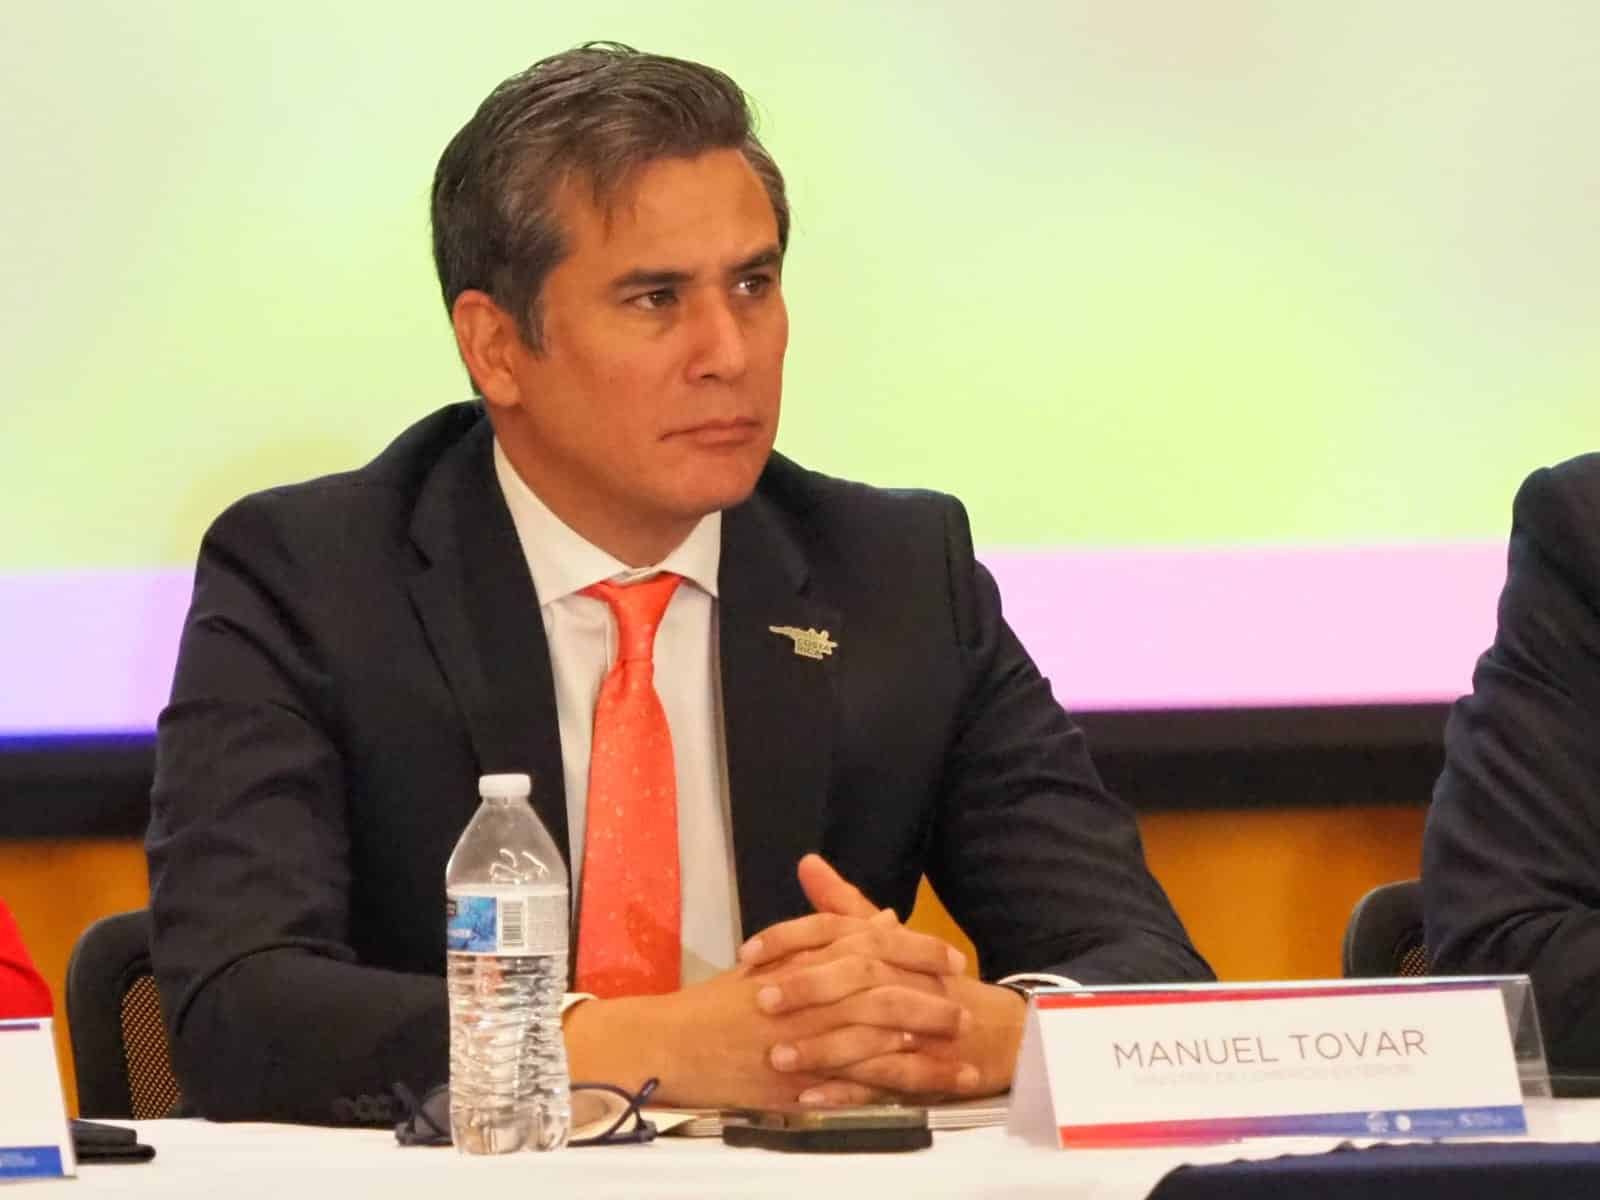 Declaraciones del ministro Manuel Tovar generan incertidumbre en empresas, asegura Cinde en carta al presidente Chaves